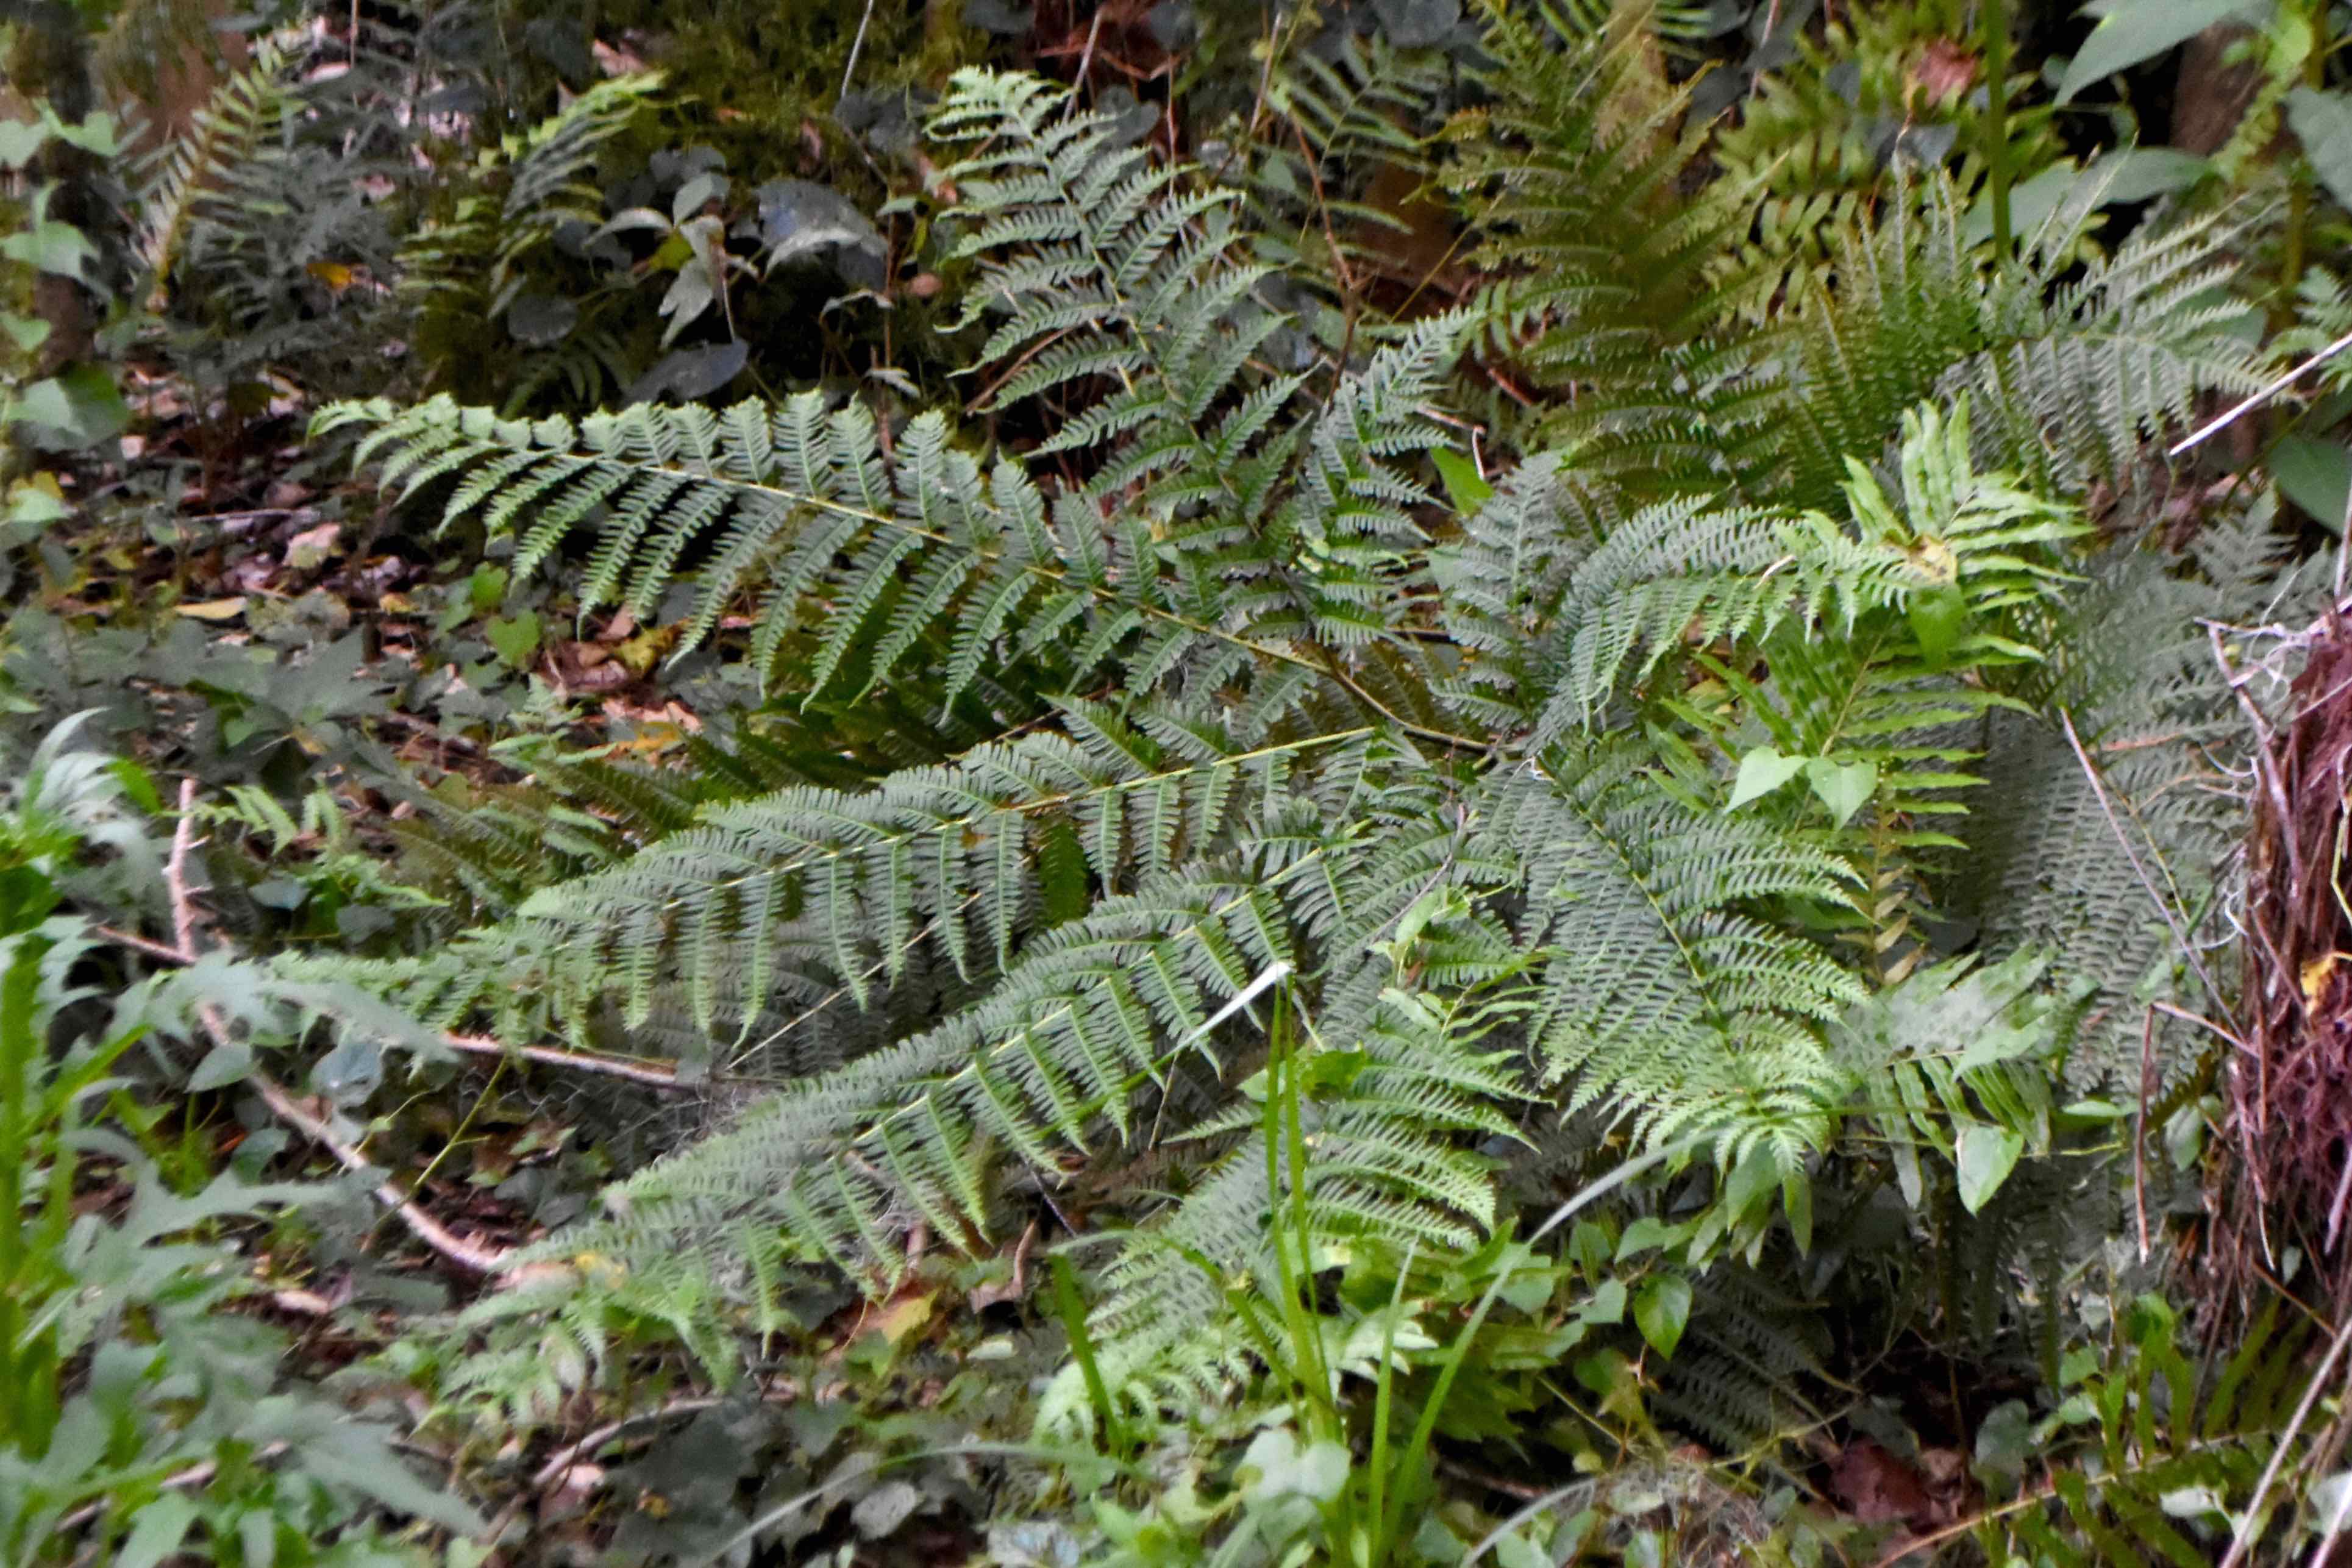 Tailed bracken fern